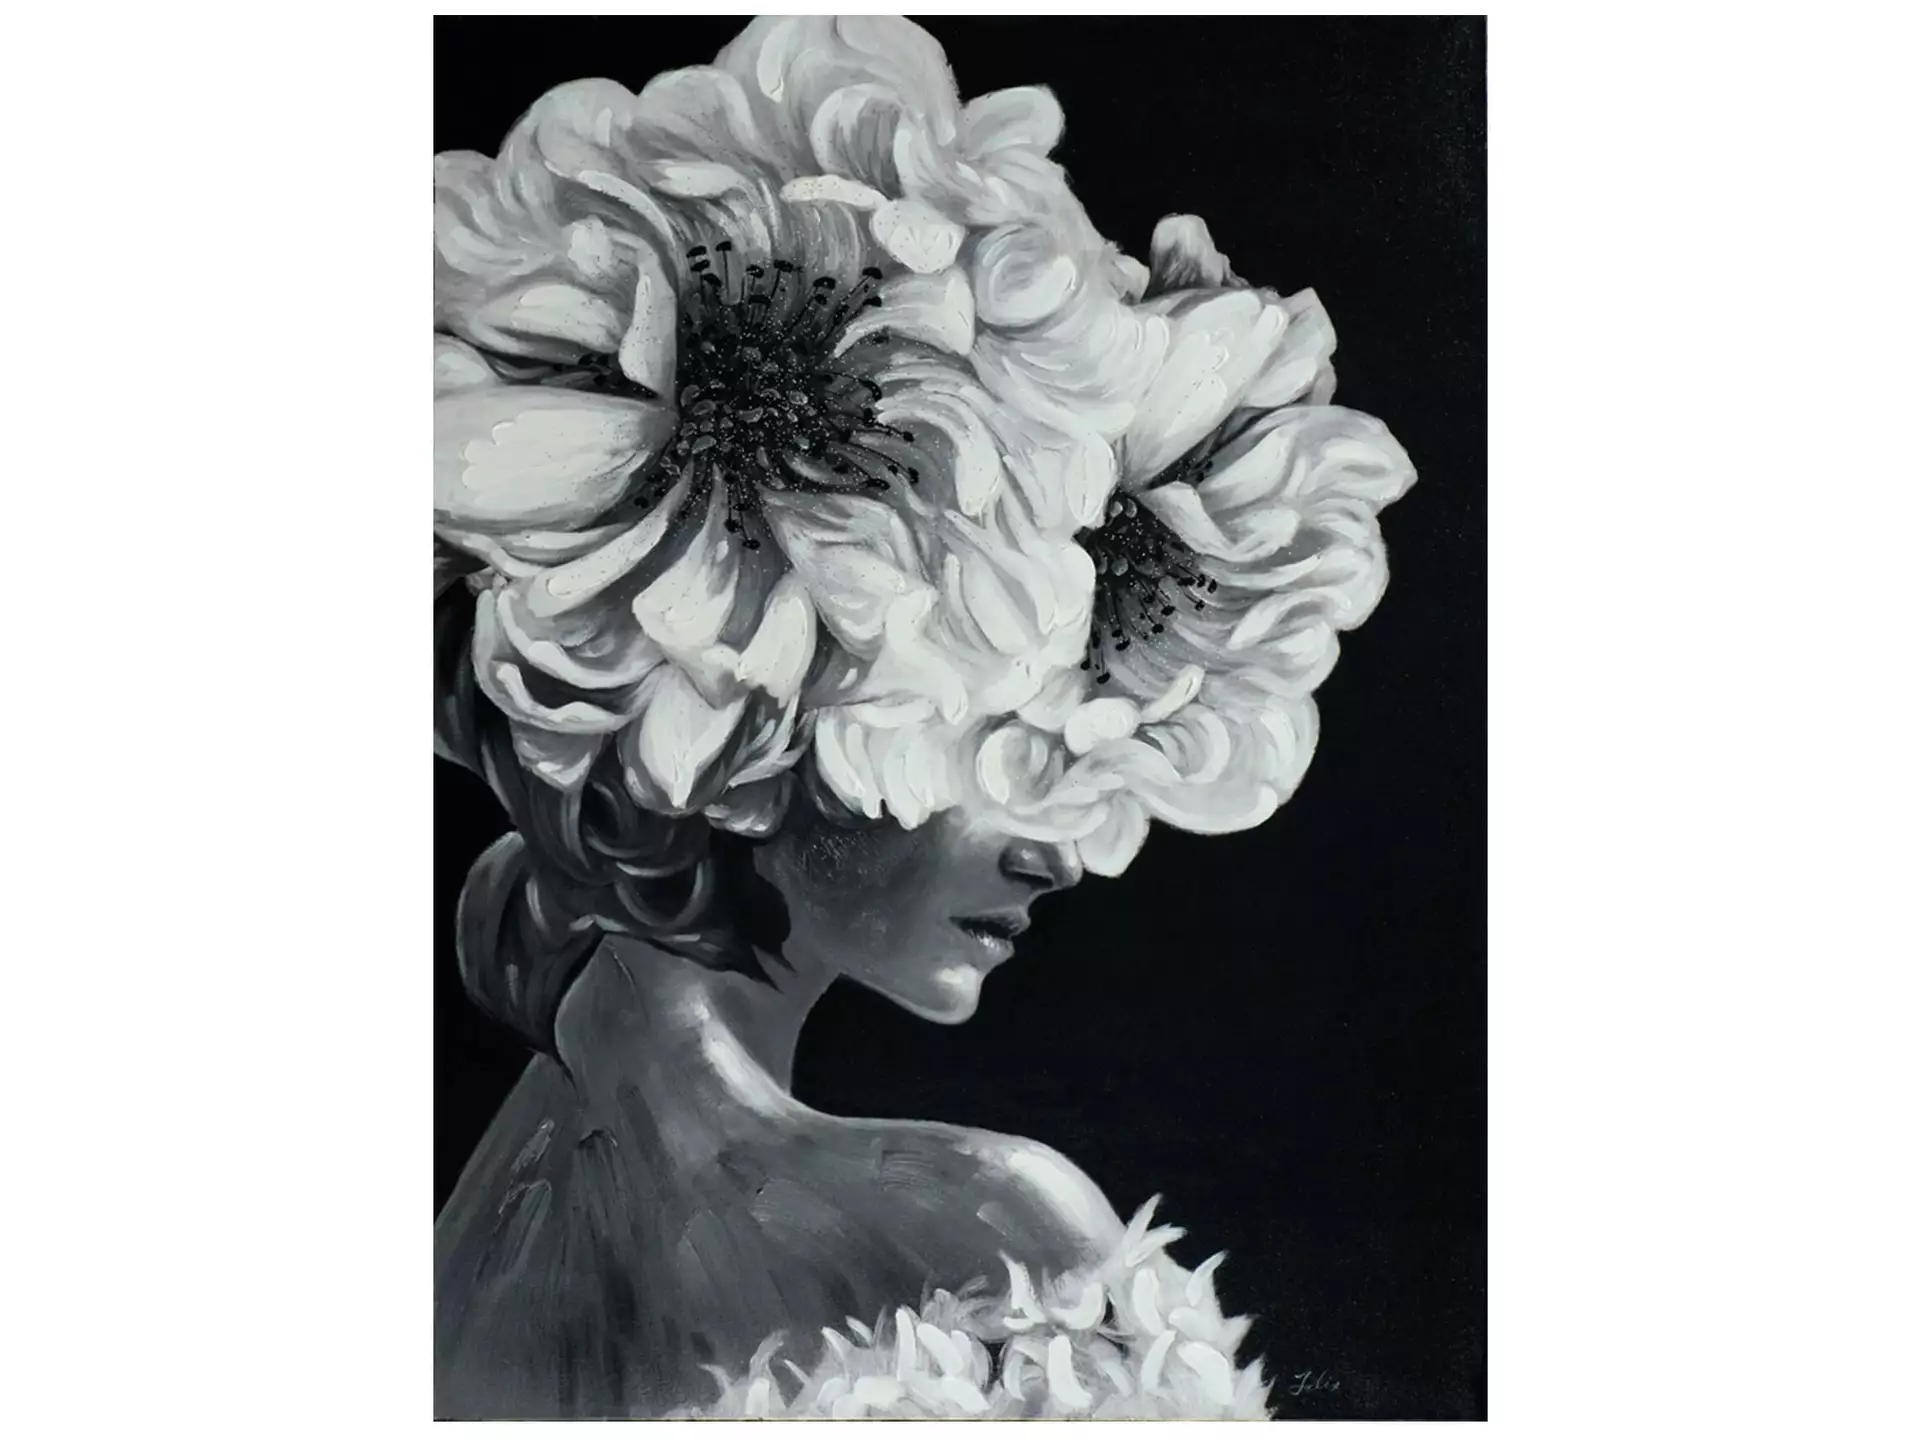 Bild Lady mit Blumenperücke in Schwarz-Weiss image LAND